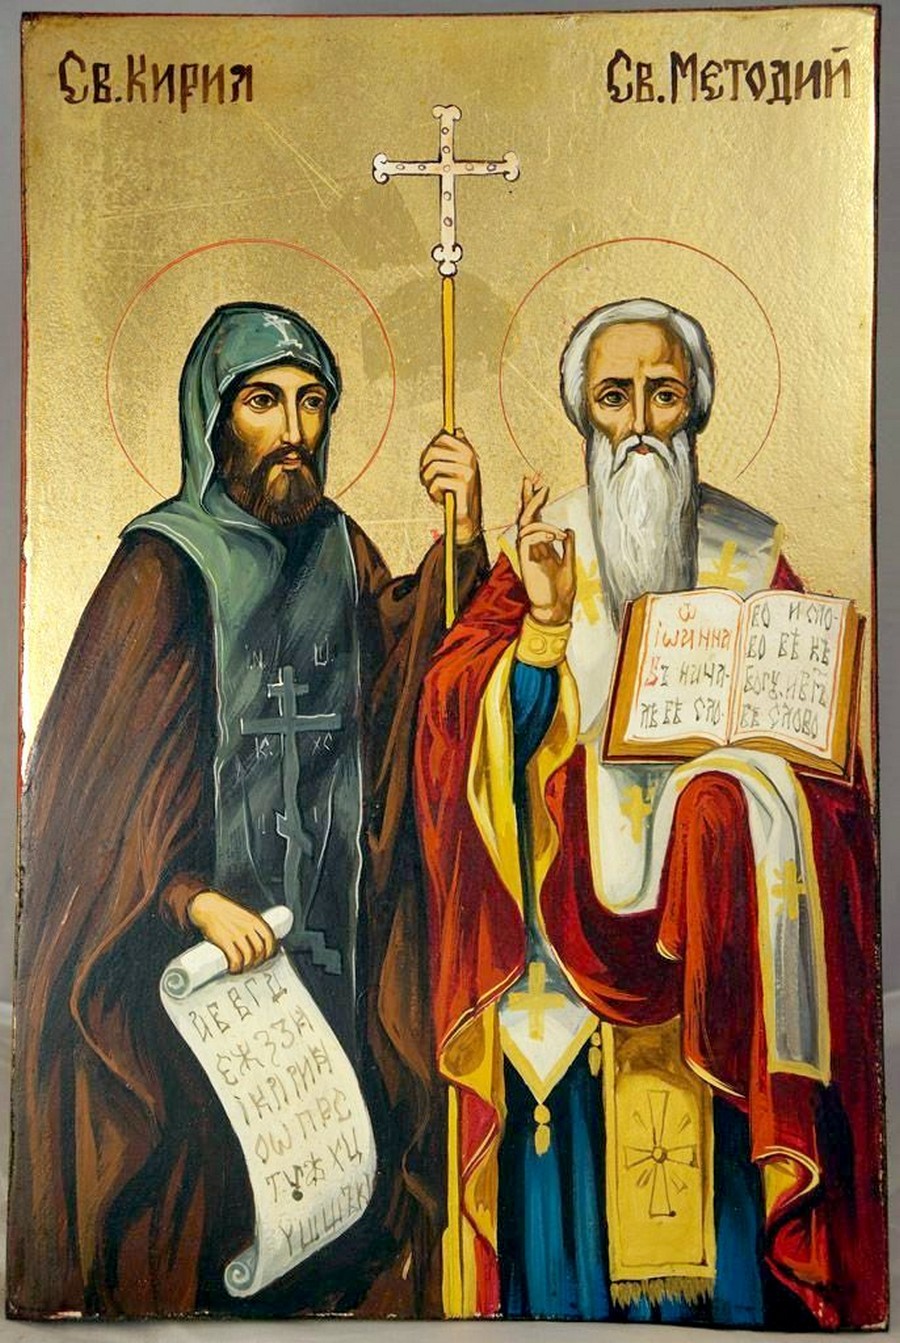 Византийские монахи Кирилл и Мефодий